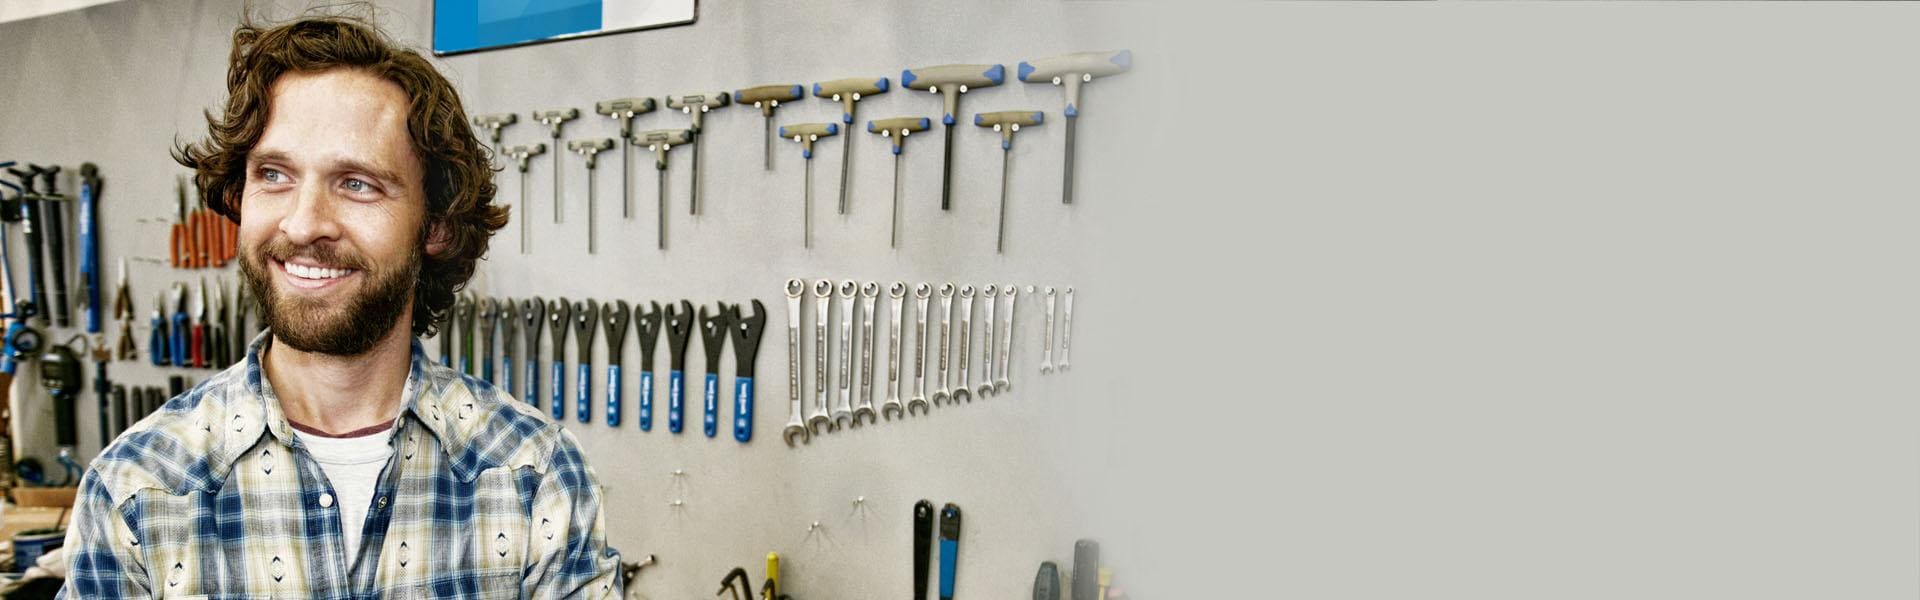 Slajd #1 - mężczyzna ściana z narzędziami